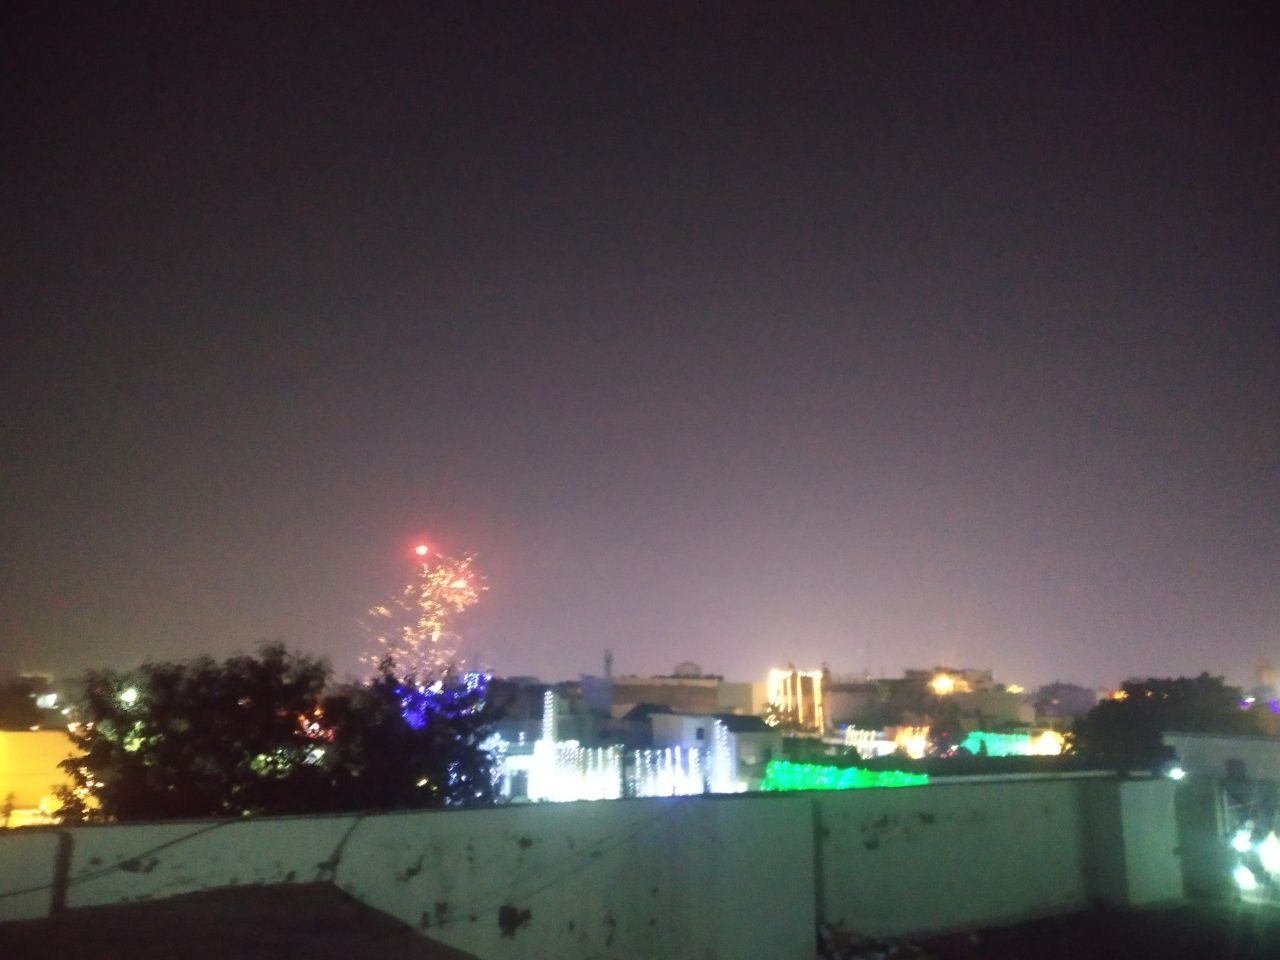 Diwali Night Air Quality Index in Meerut : खतरनाक गैस के चेंबर में तब्दील मेरठ NCR, पटाखों से लगातार बिगड़ रहे हालात